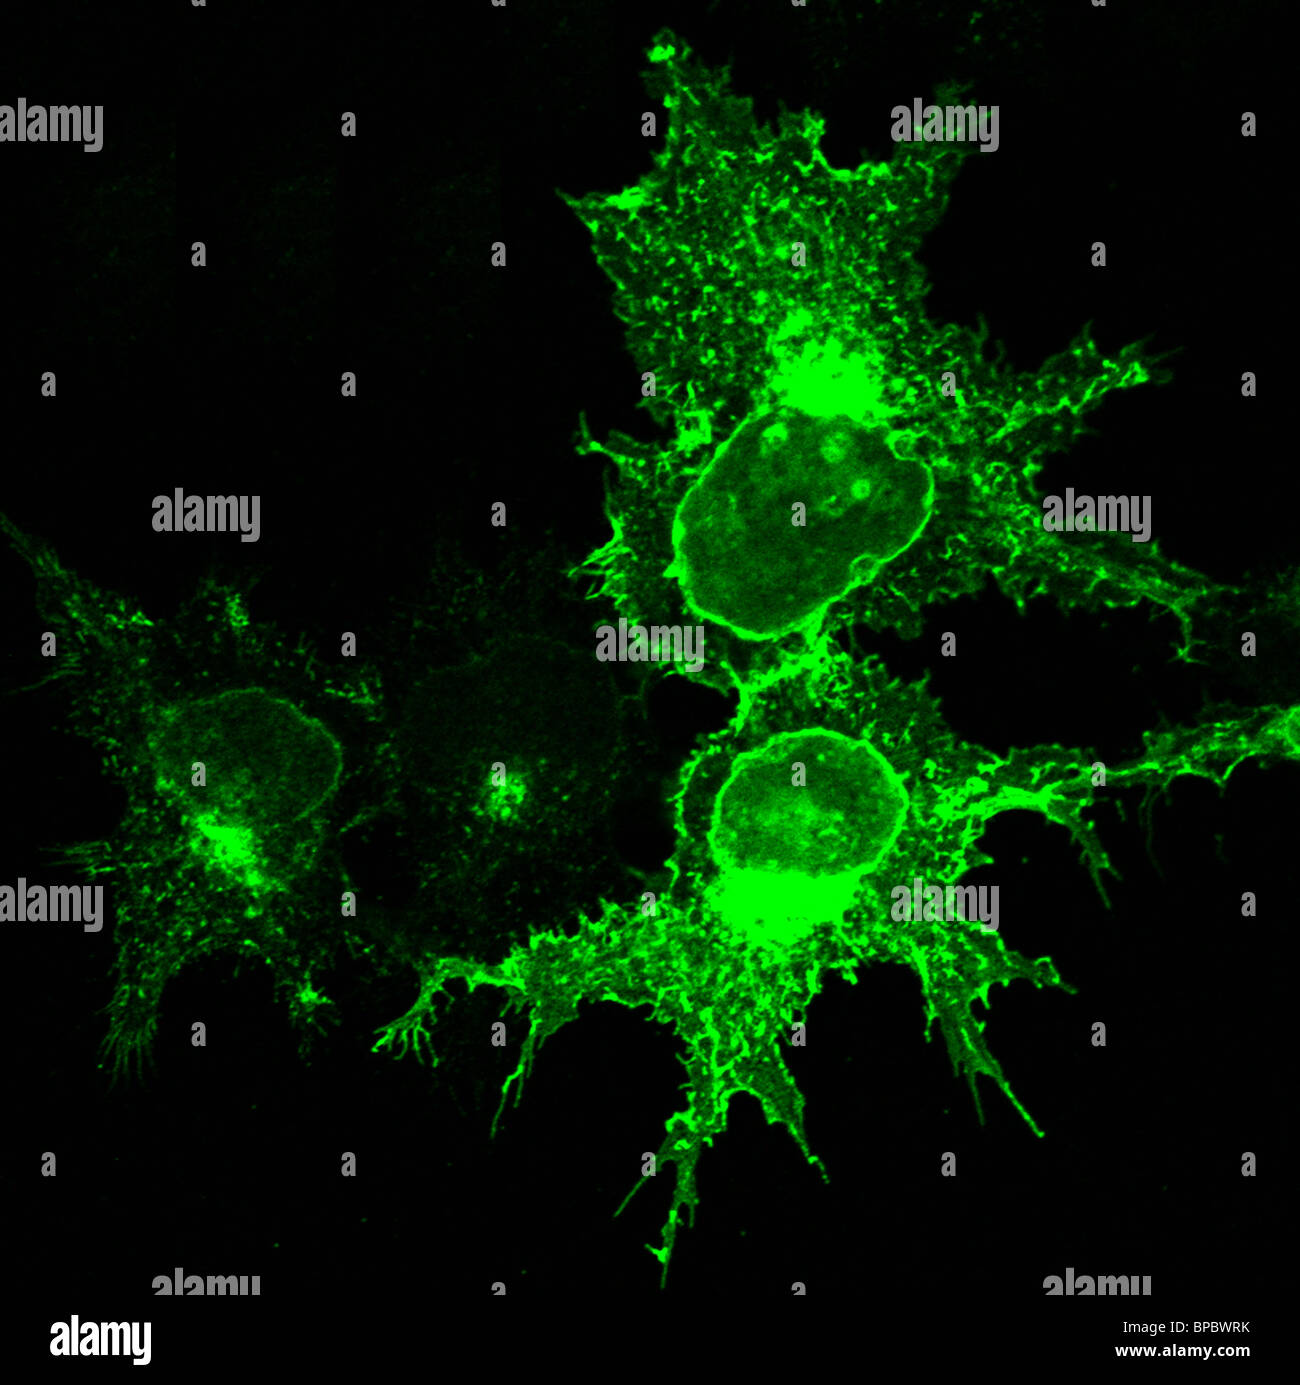 Immunofluorescent image of KIAA0319 protein in cells Stock Photo